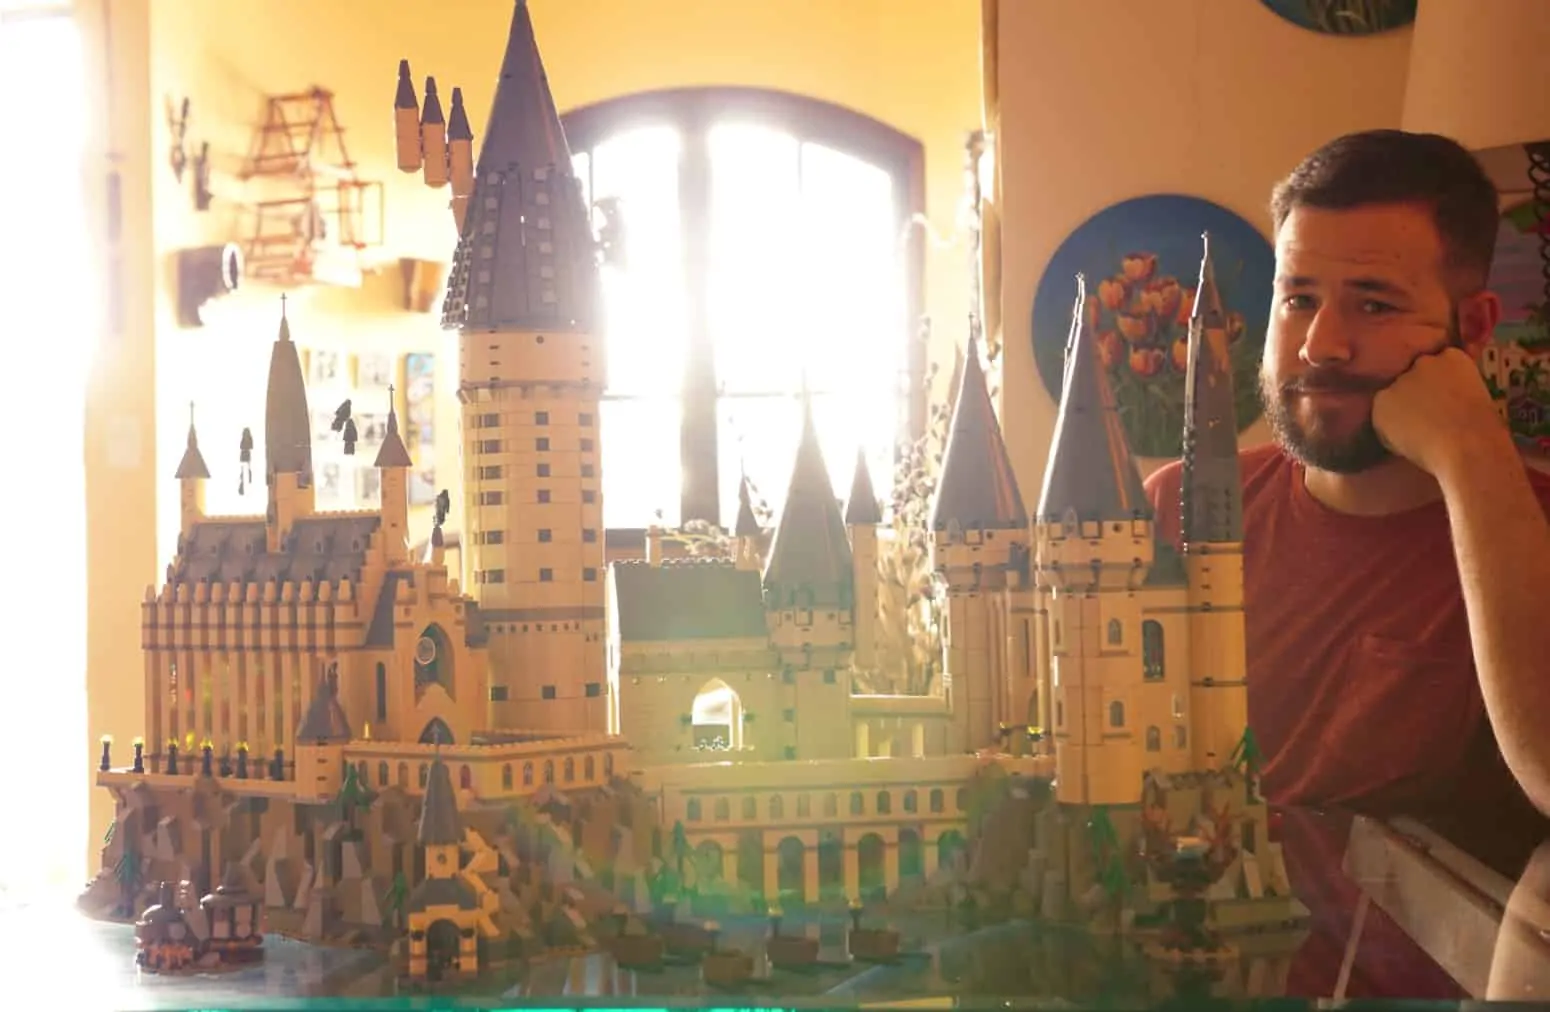 Com 6 mil peças, castelo de Hogwarts da LEGO dá trabalho para montar, mas é obra-prima para fãs